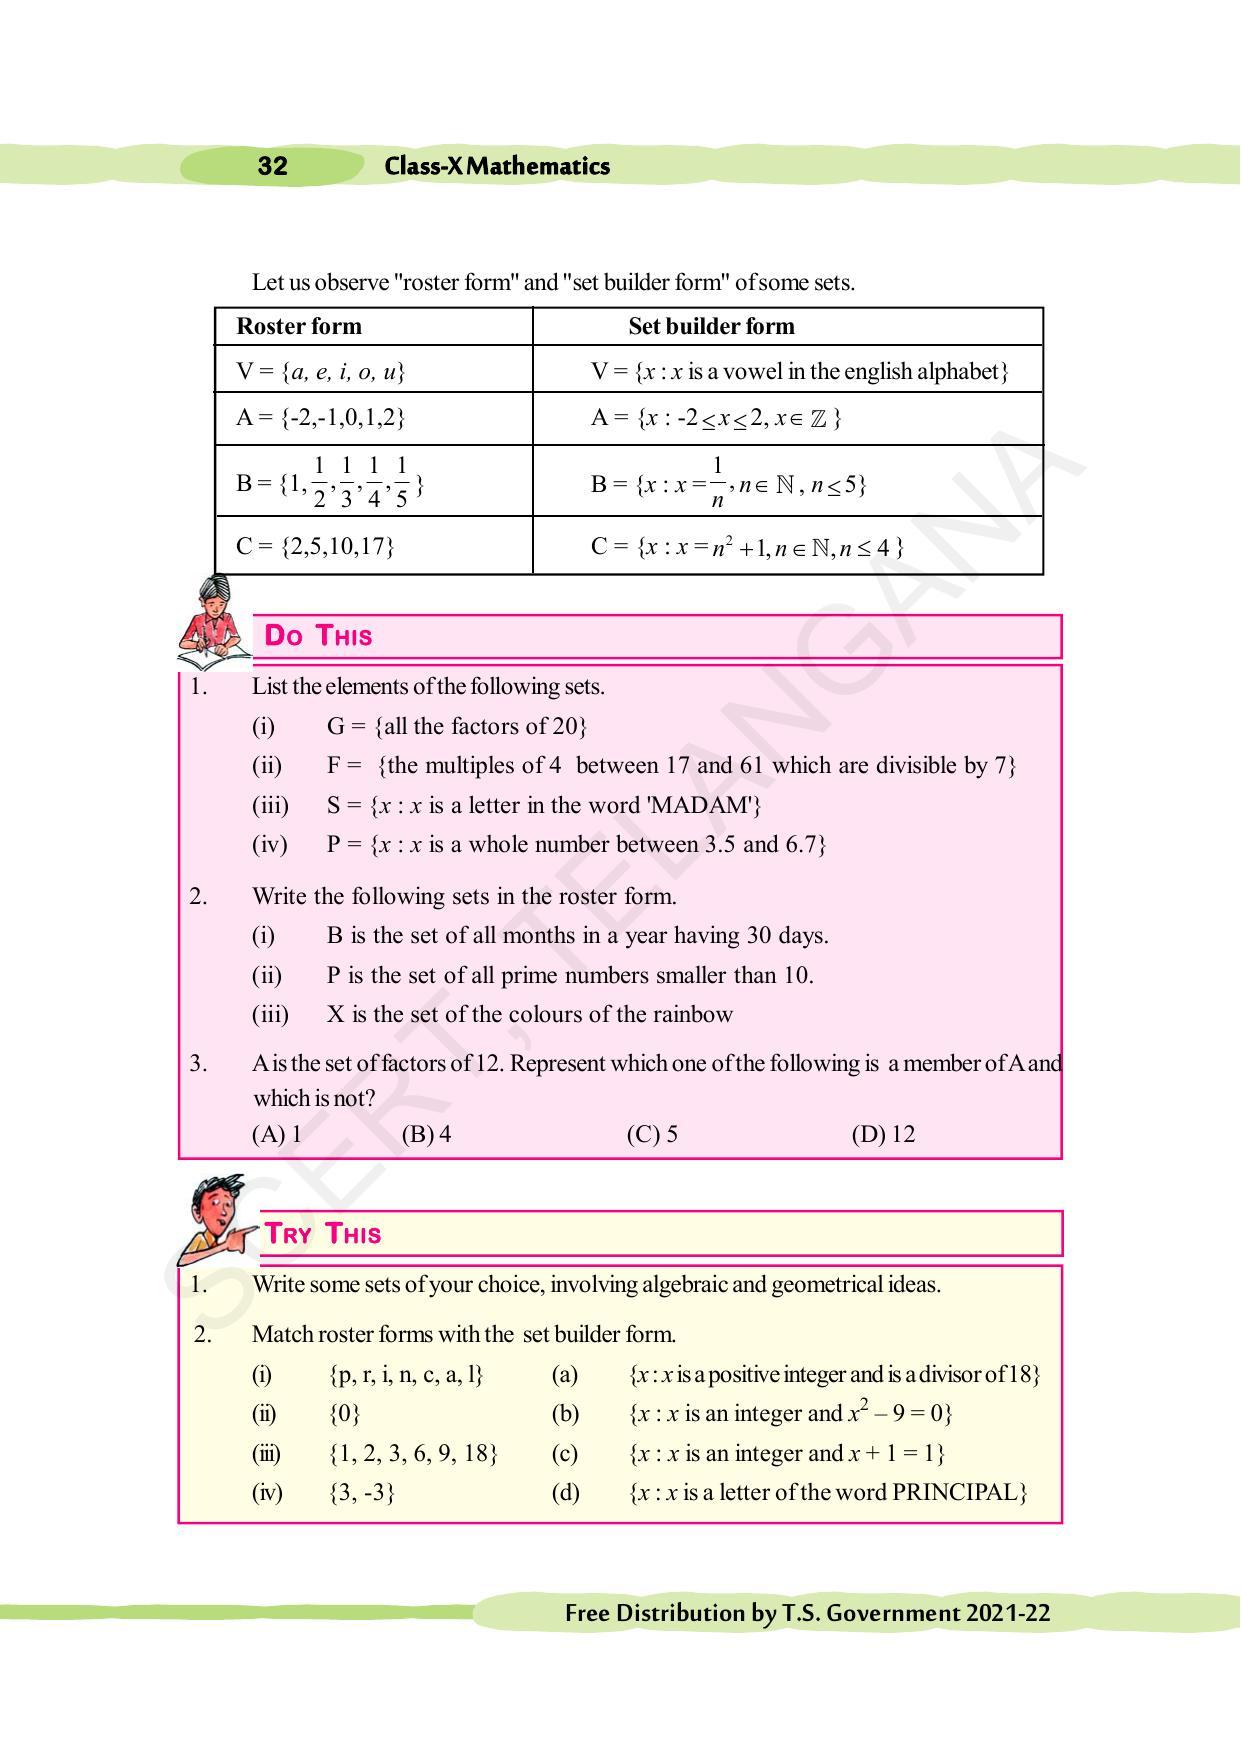 TS SCERT Class 10 Maths (English Medium) Text Book - Page 42